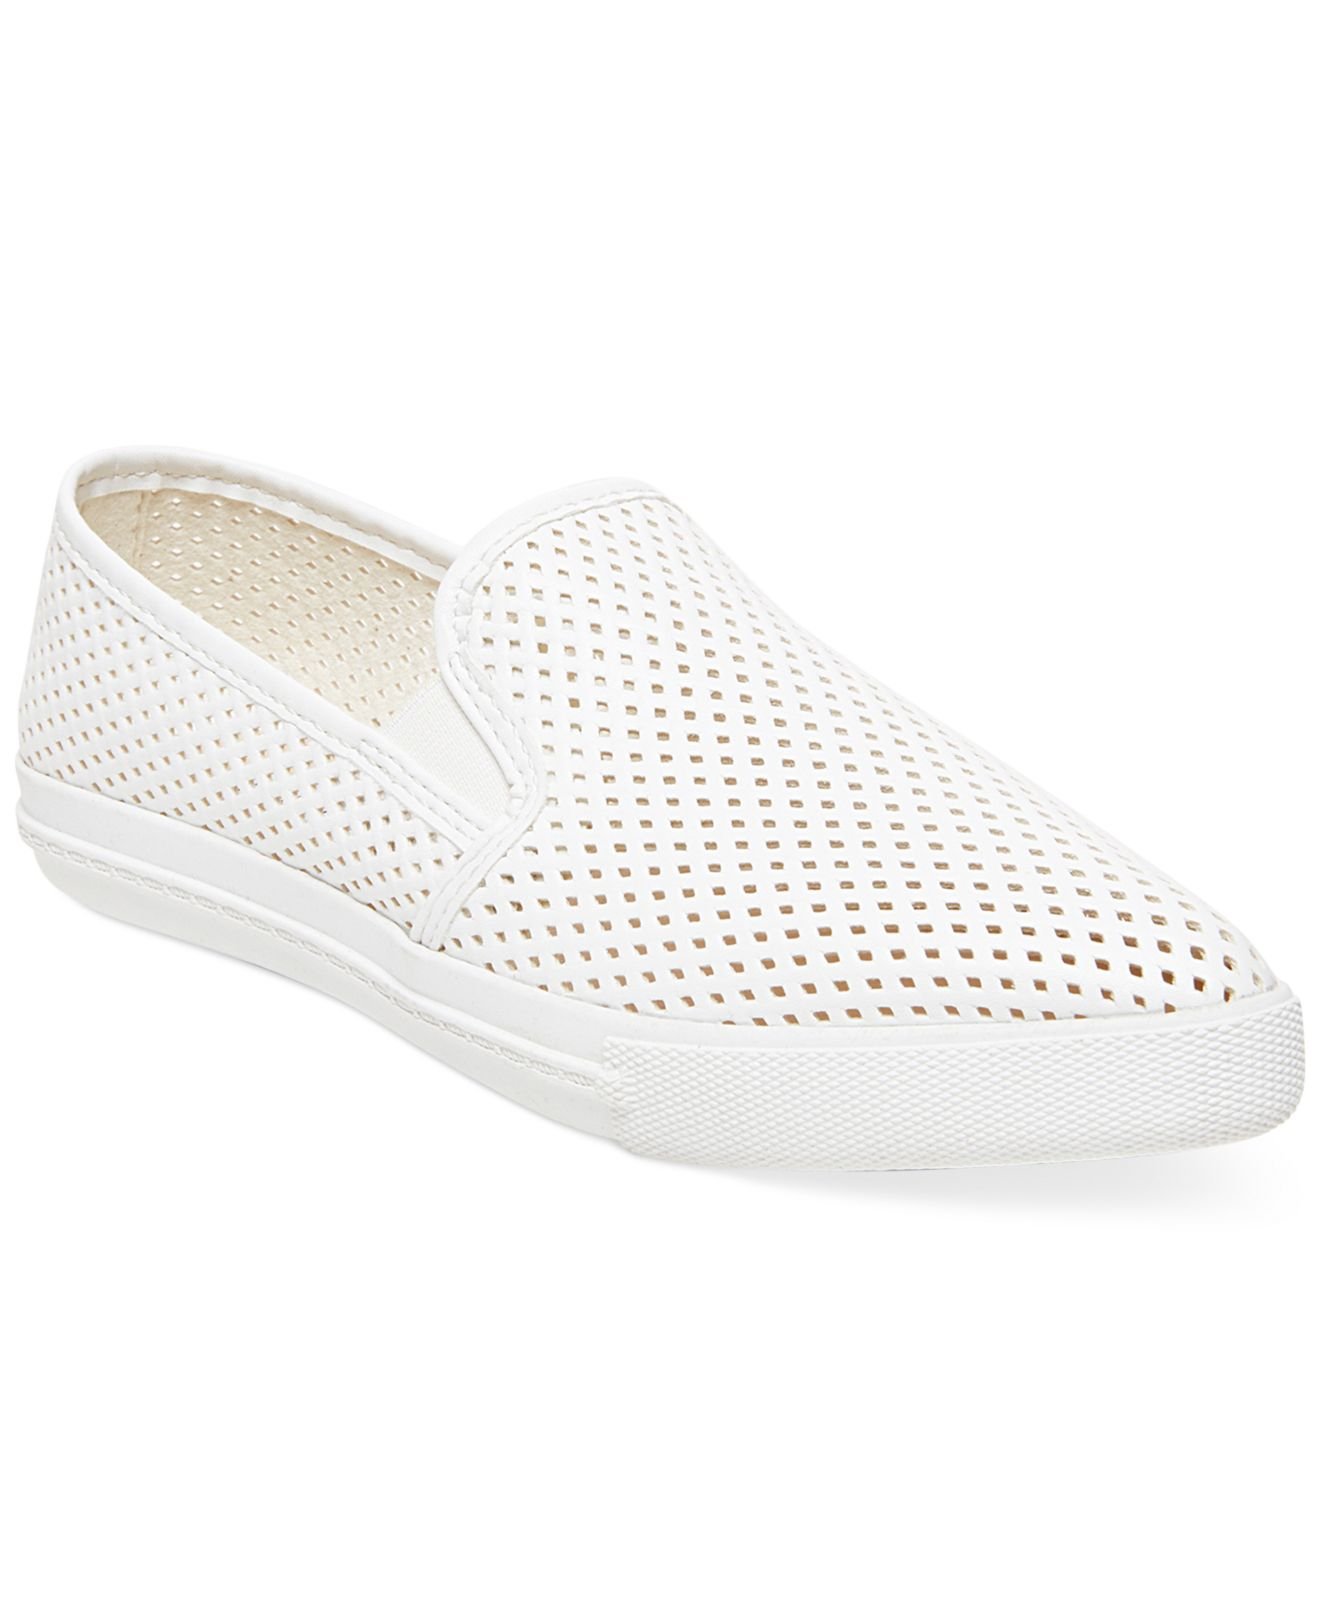 Lyst - Steve Madden Women'S Virggo Slip-On Sneakers in White